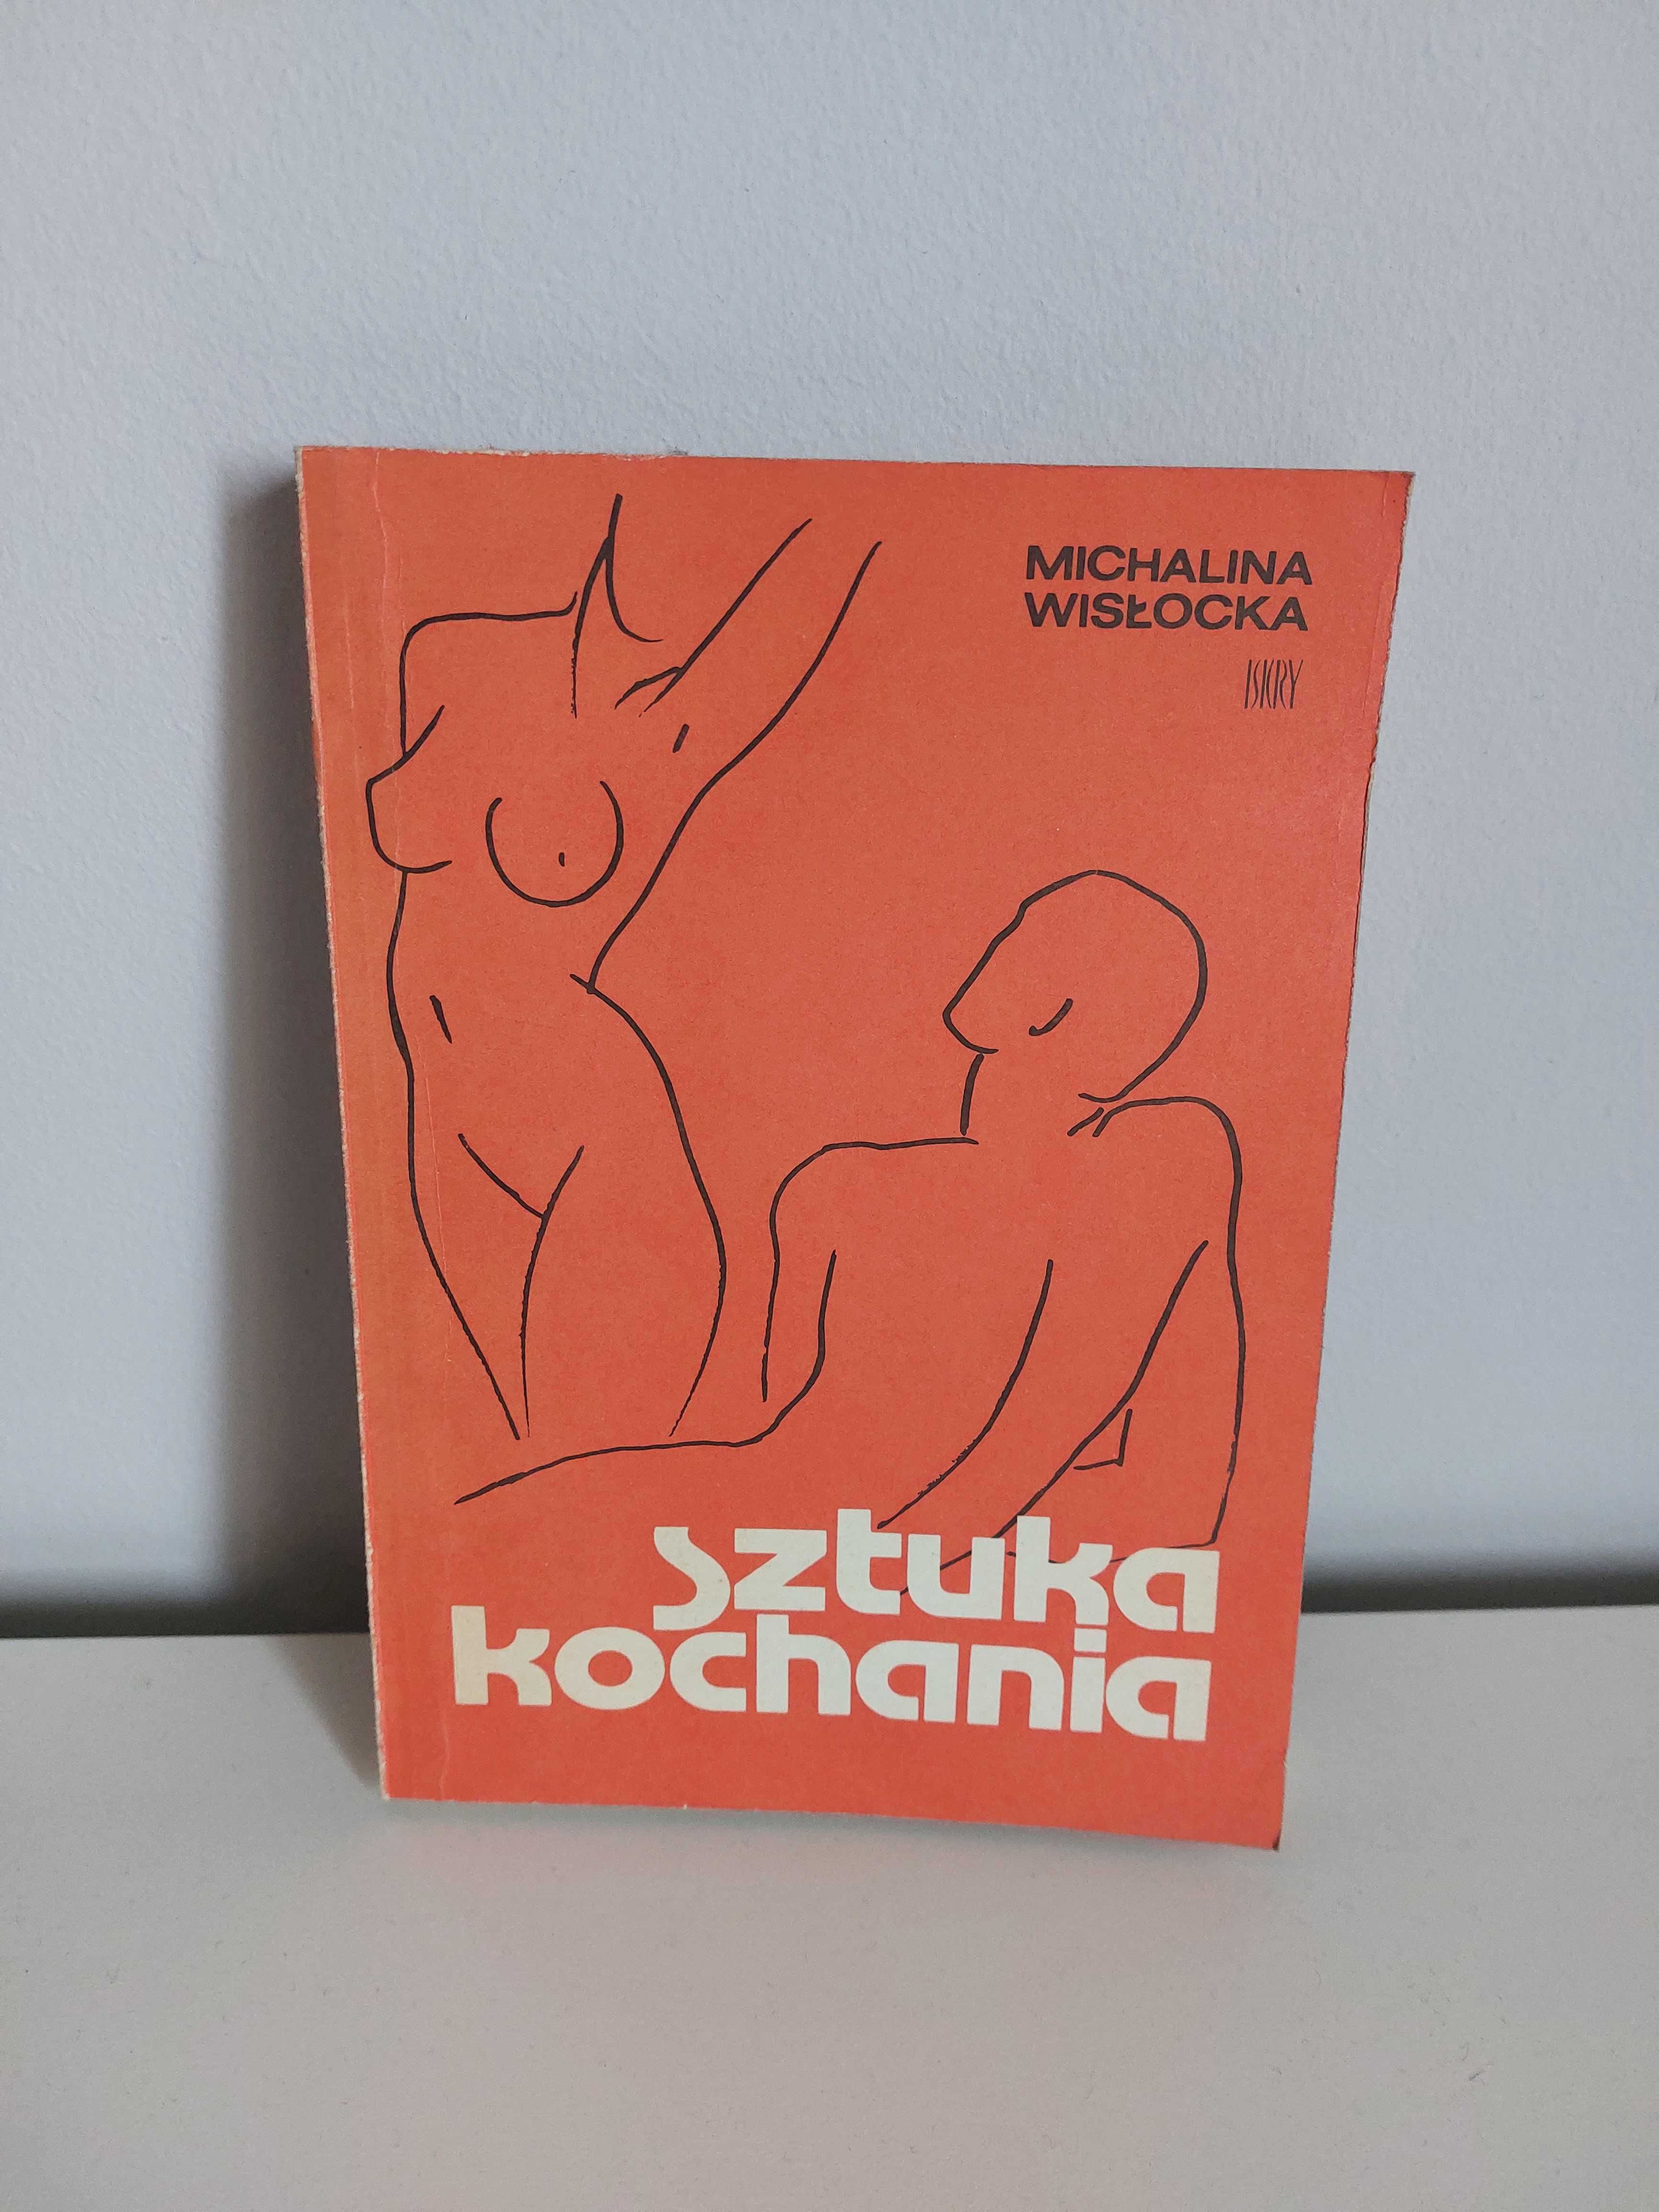 książka "Sztuka kochania", Michalina Wisłocka, oryginał, 1985 rok